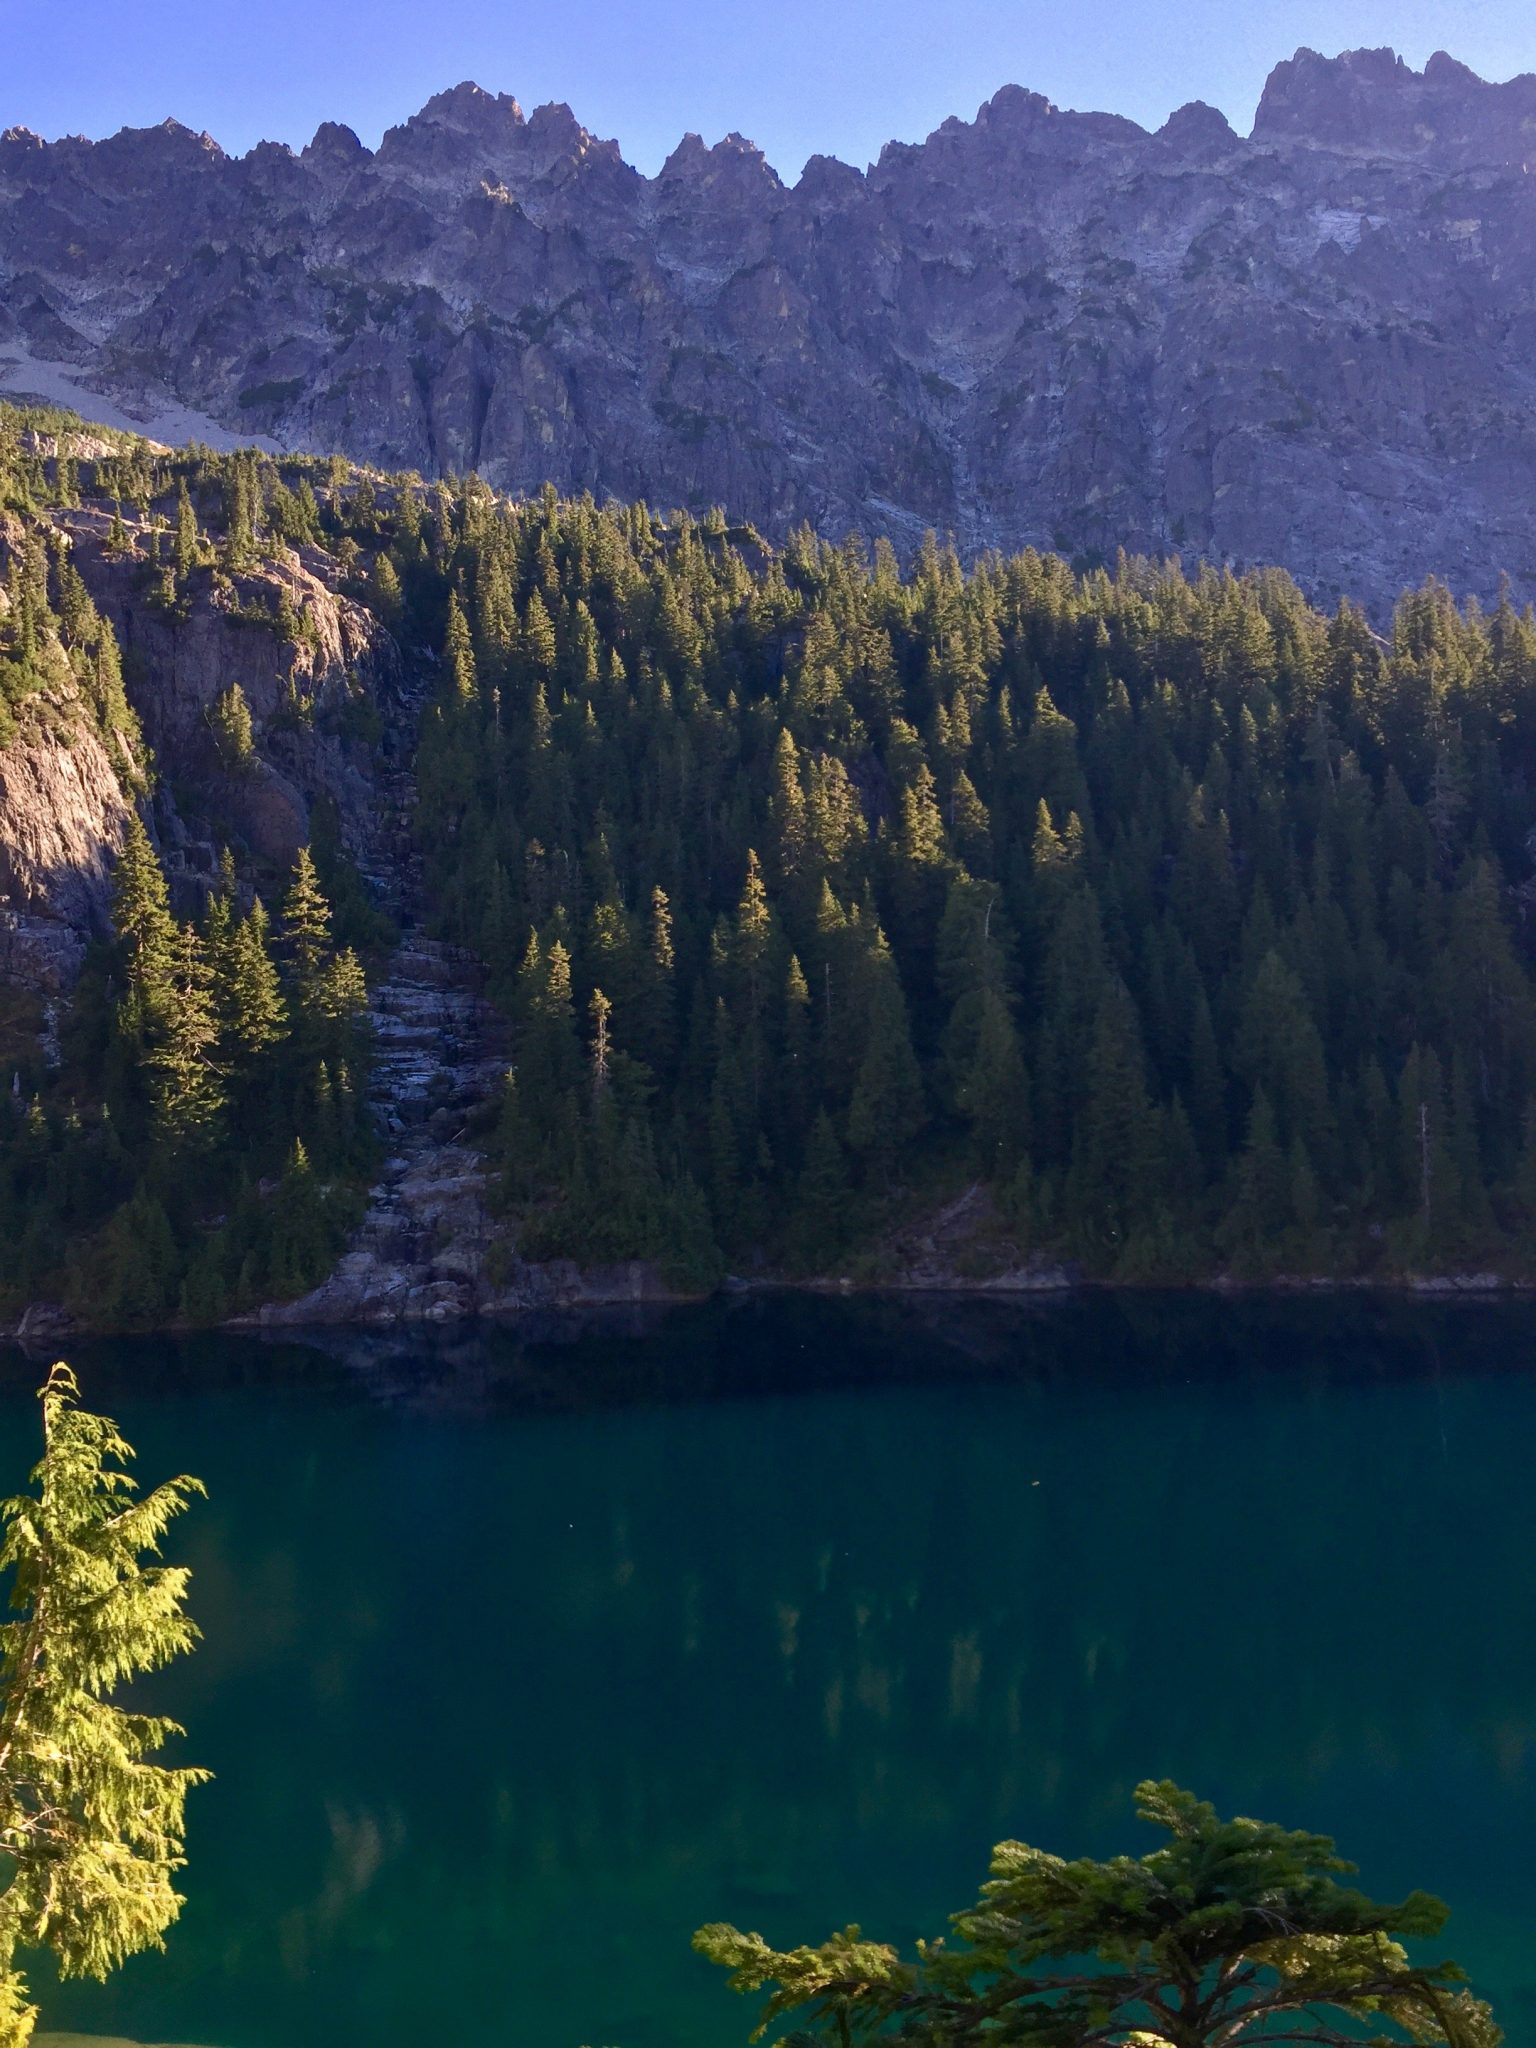 Deep green waters of Lake Ivanhoe